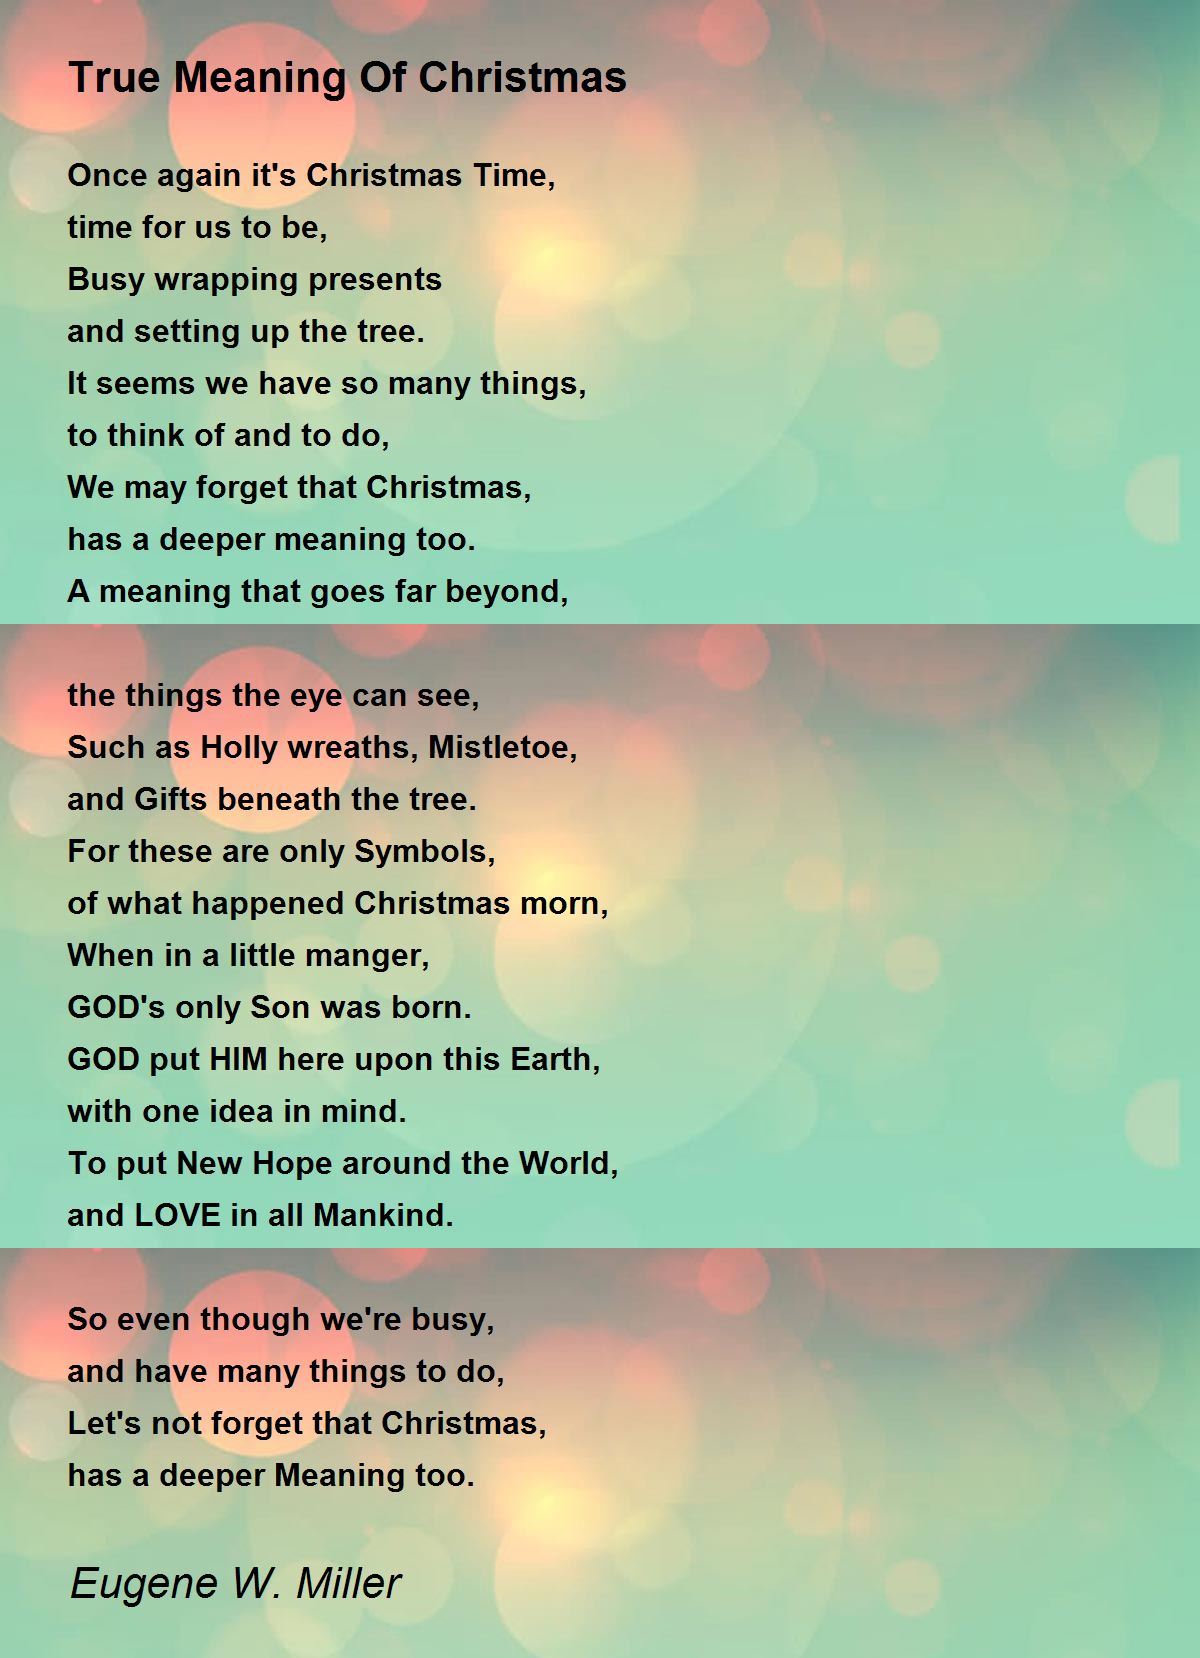 Básně o významu Vánoc